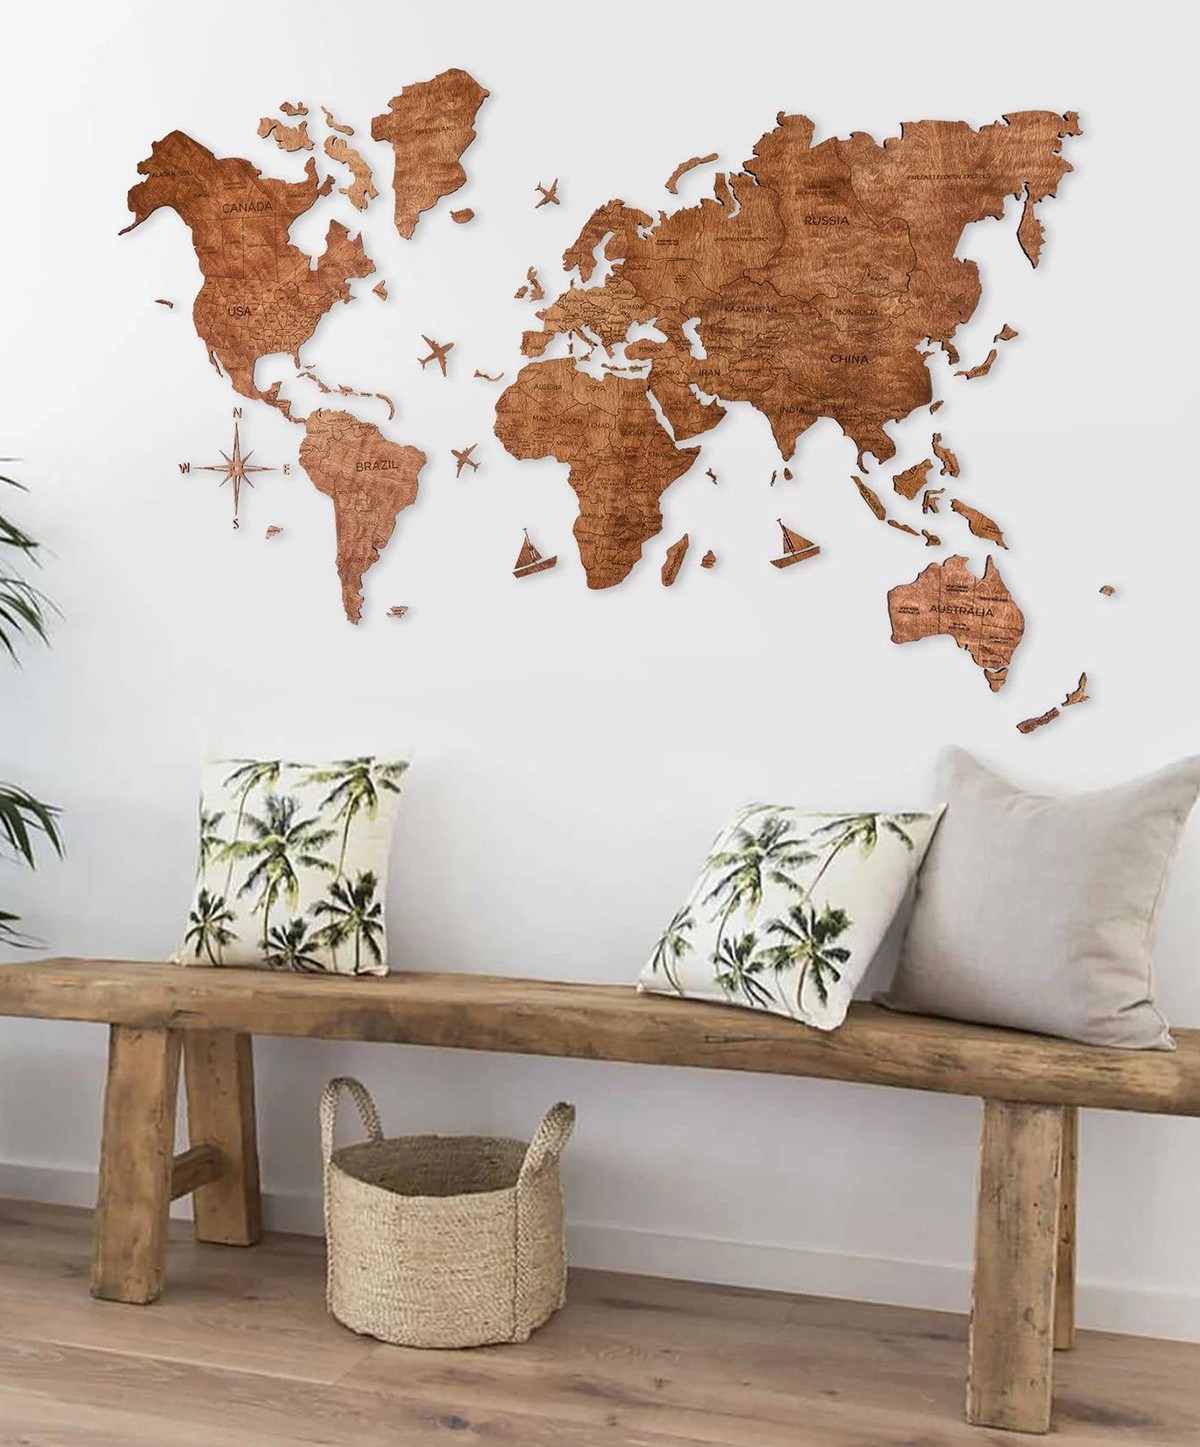 Pictura pe perete a hărții stejarului mondial